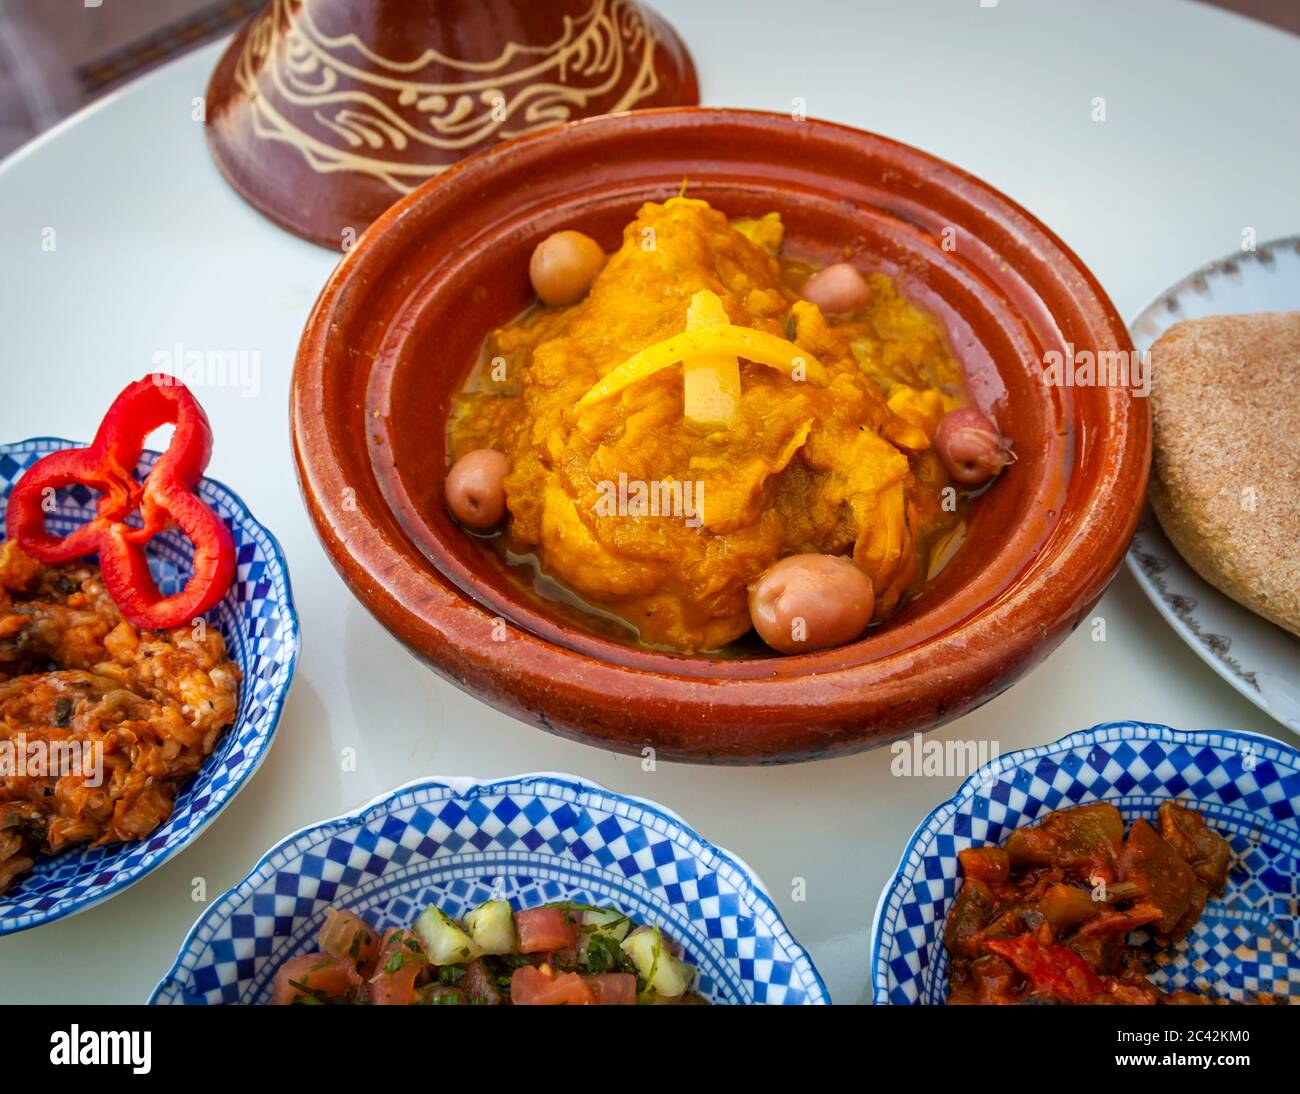 Des spécialités marocaines typiques, comme le poulet au citron, sont préparées dans le tajine d'argile Banque D'Images